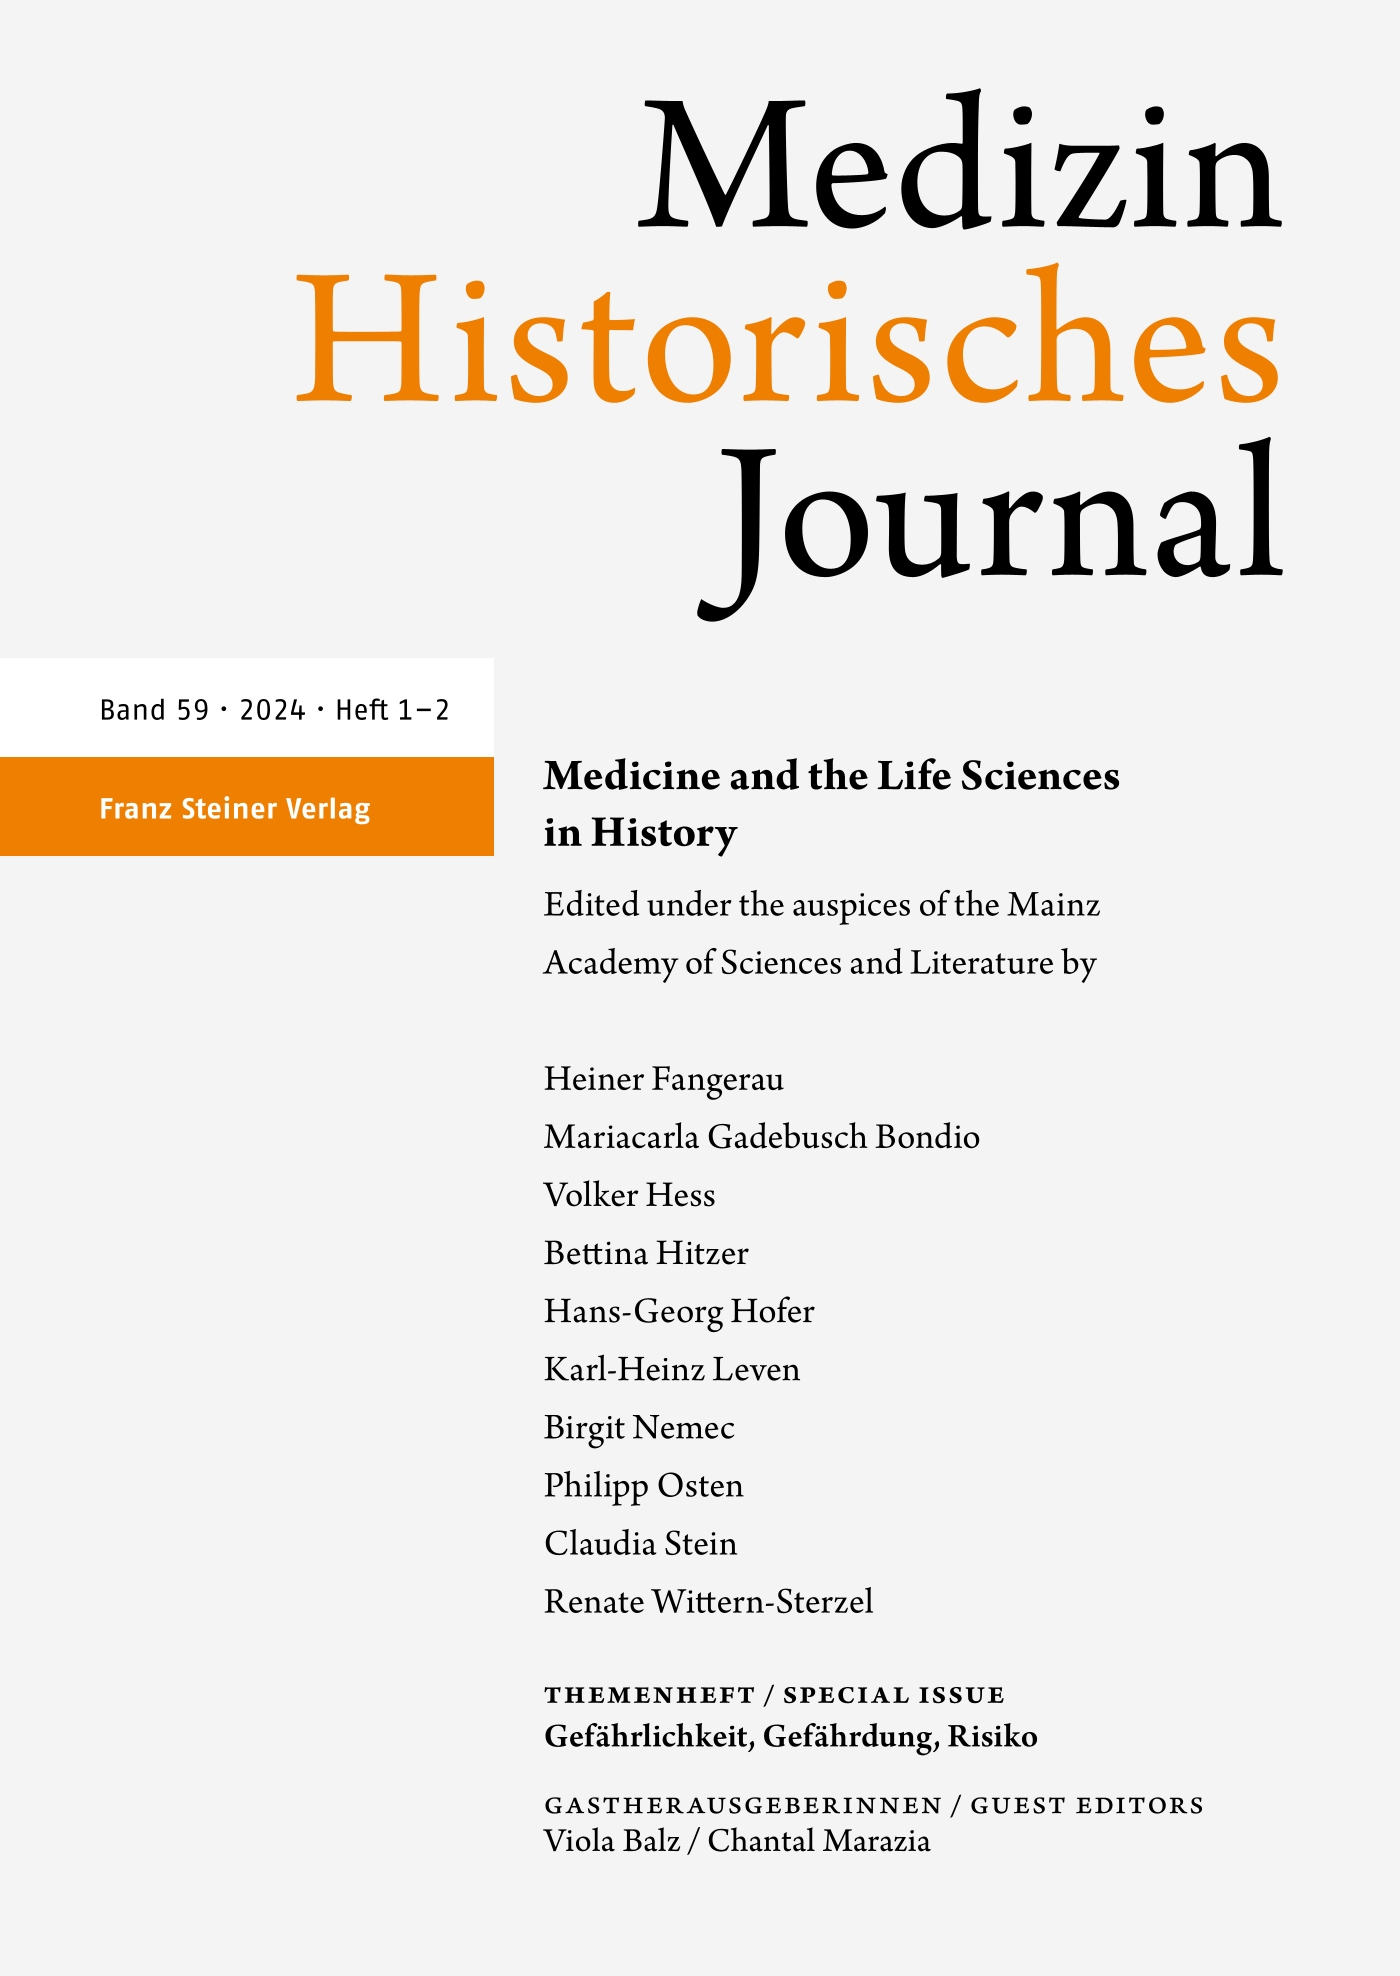 Medizinhistorisches Journal - print + online